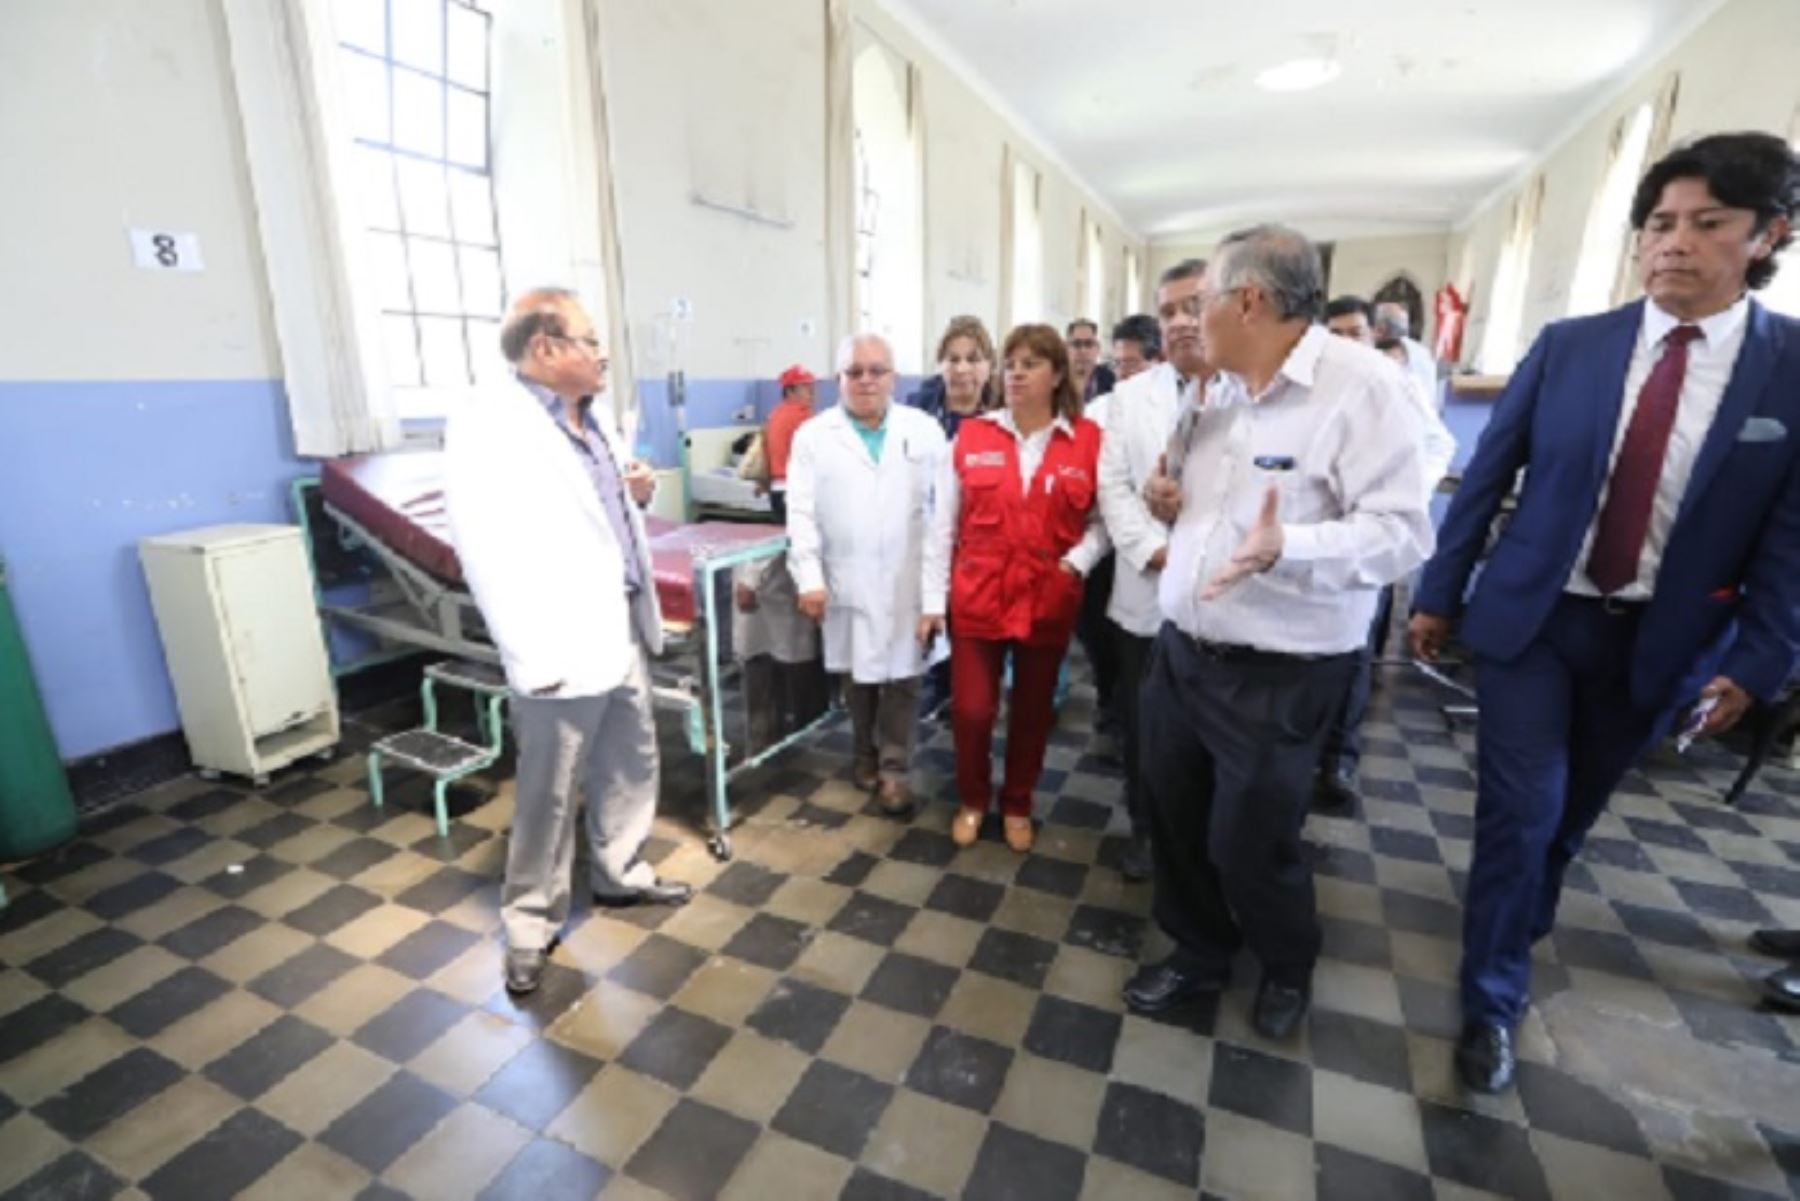 El Ministerio de Salud (Minsa) adoptará medidas urgentes con el Gobierno Regional de Arequipa, para fortalecer los servicios de salud en la región, como mejorar la infraestructura, equipamiento y recursos humanos de los hospitales Goyeneche y Honorio Delgado.